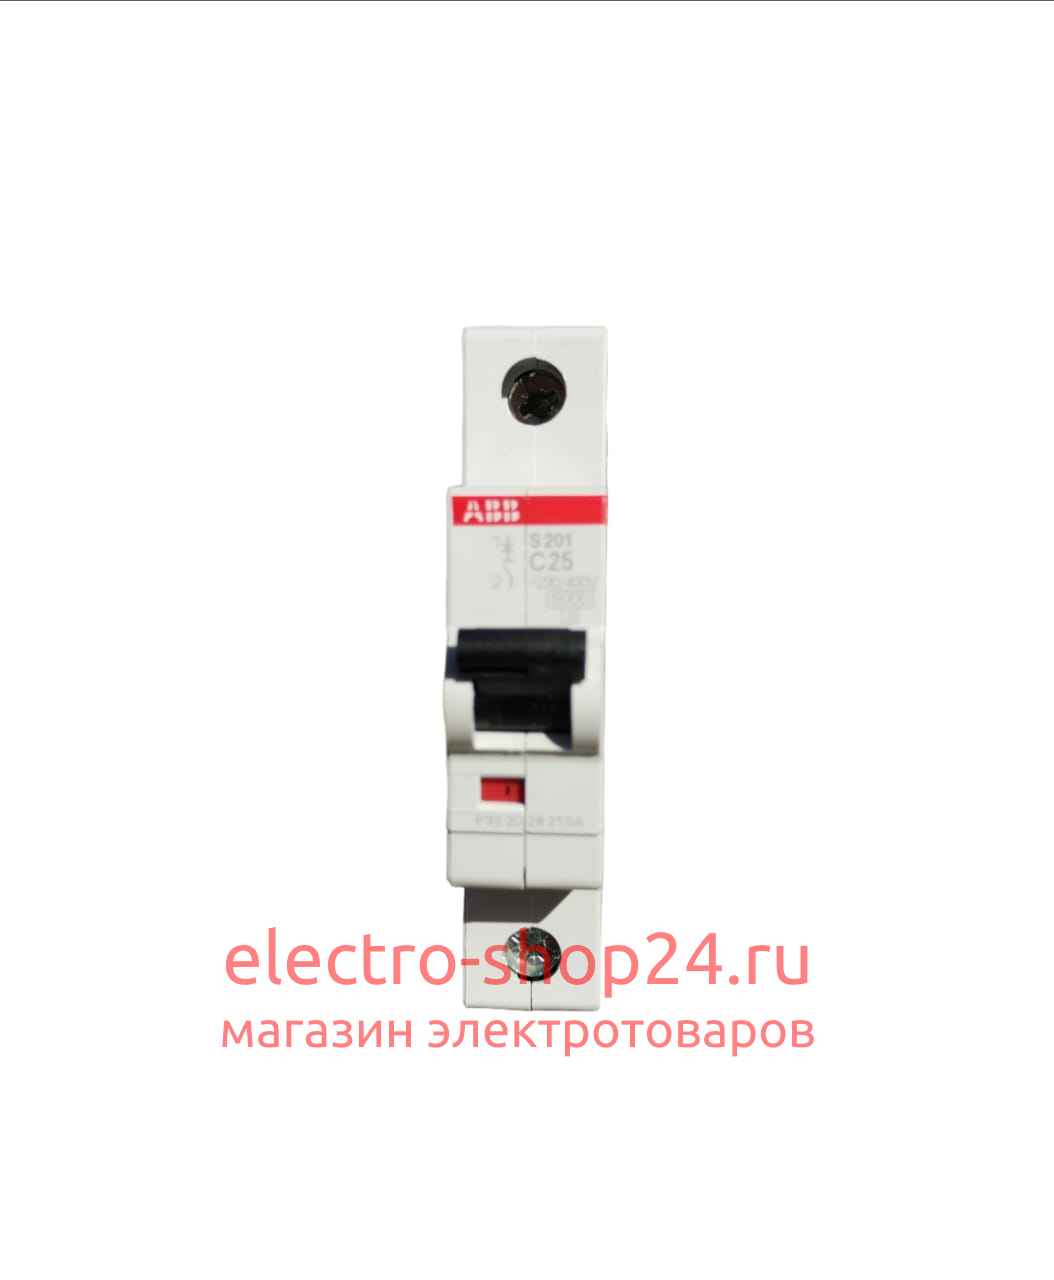 S201 C25 Автоматический выключатель 1-полюсный 25А 6кА (хар-ка C) ABB 2CDS251001R0254 2CDS251001R0254 - магазин электротехники Electroshop